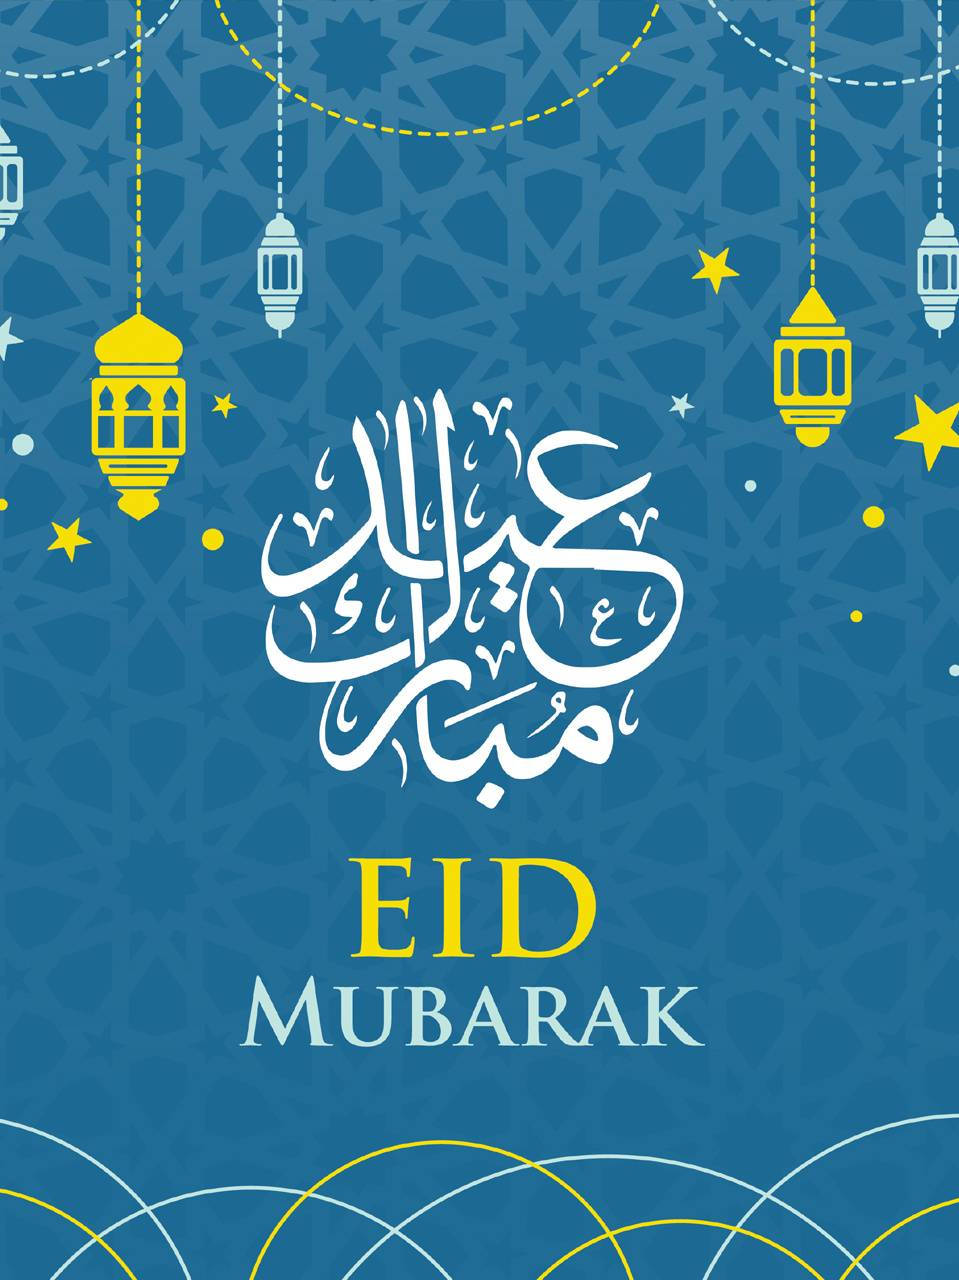 Caption: Celebrating The Spirit Of Eid Mubarak